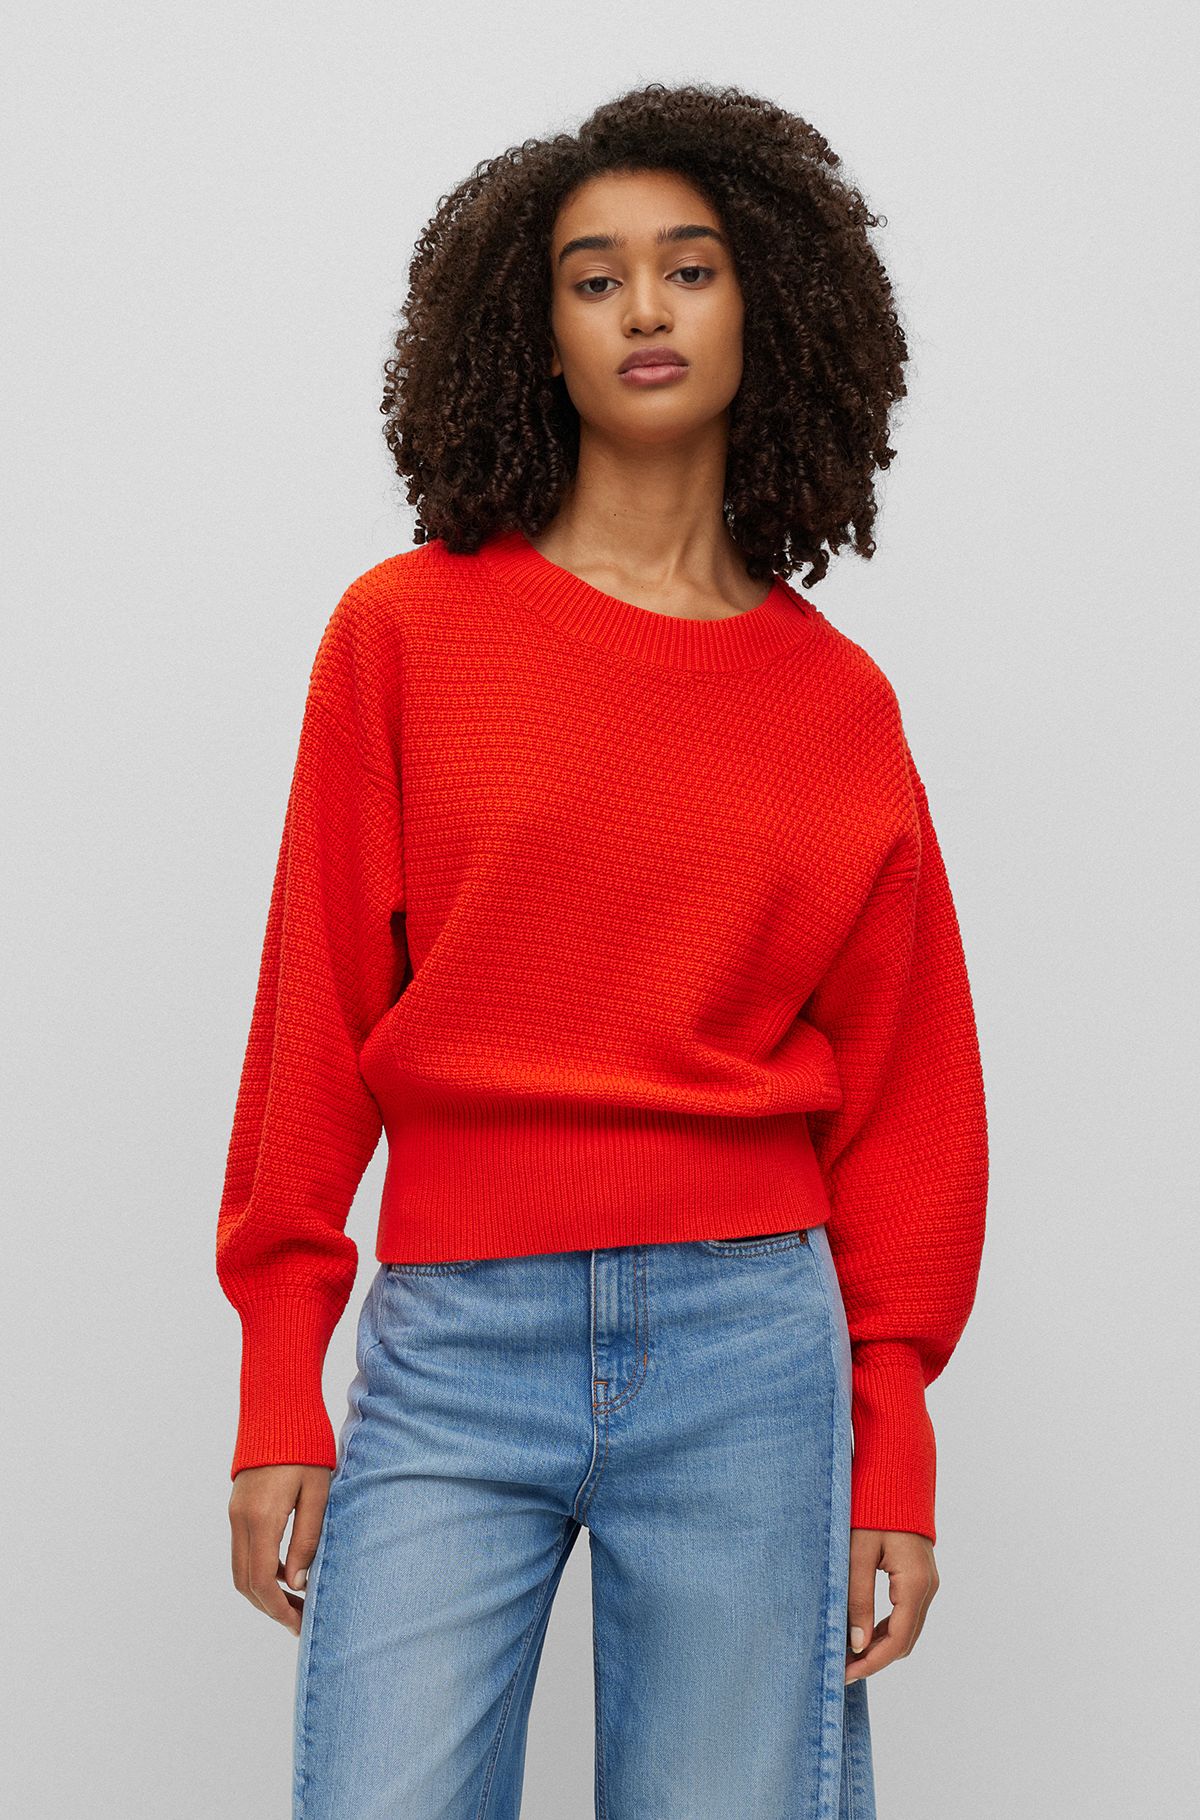 & BOSS Women for Sweaters by Cardigans Orange HUGO